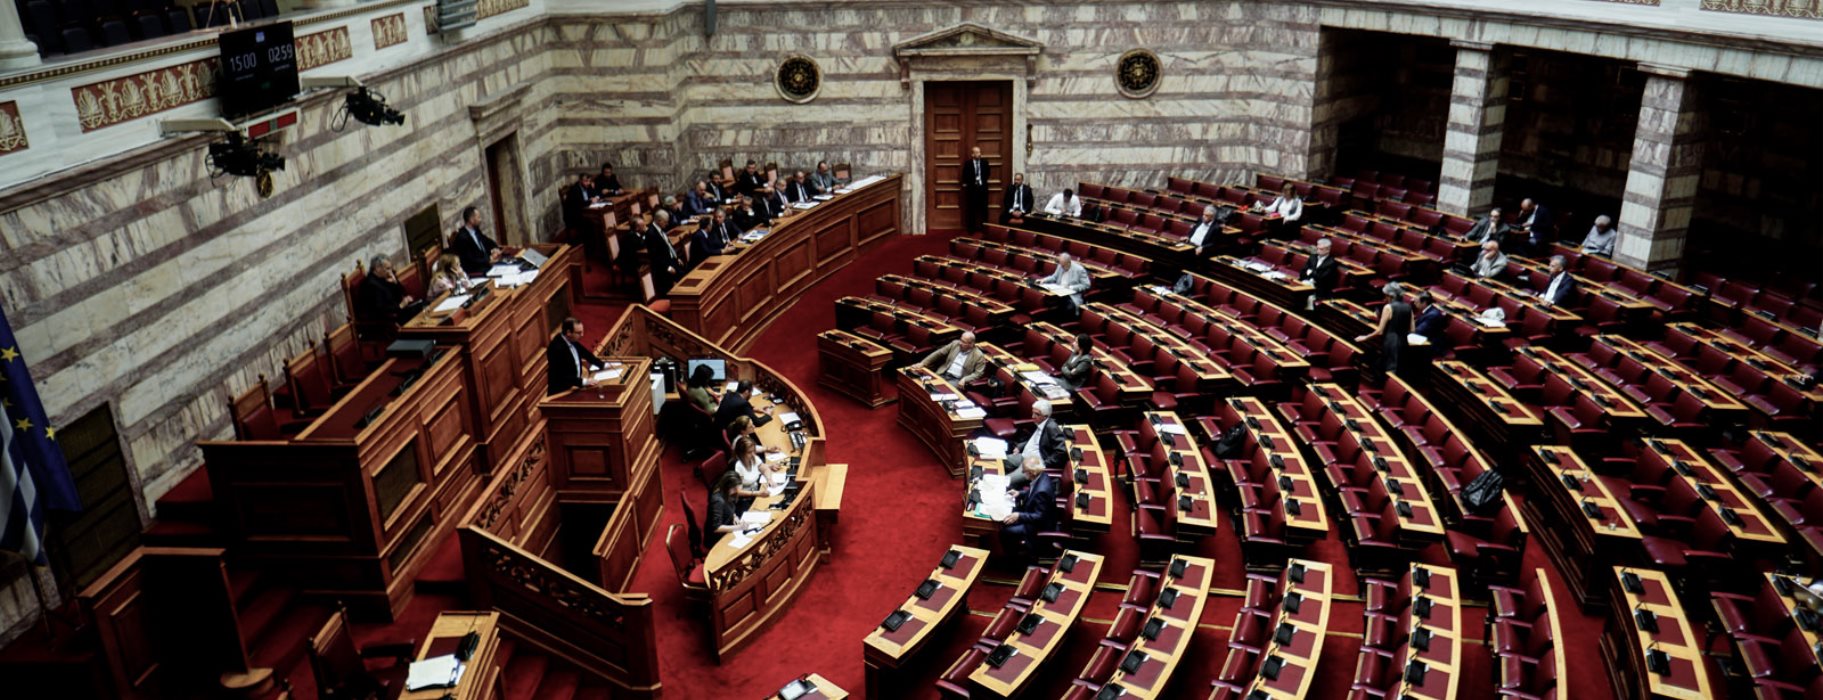 Πτωχευτικός νόμος – Βουλή: Ο ΣΥΡΙΖΑ κατέθεσε αίτημα ονομαστικής ψηφοφορίας επί σειρά άρθρων